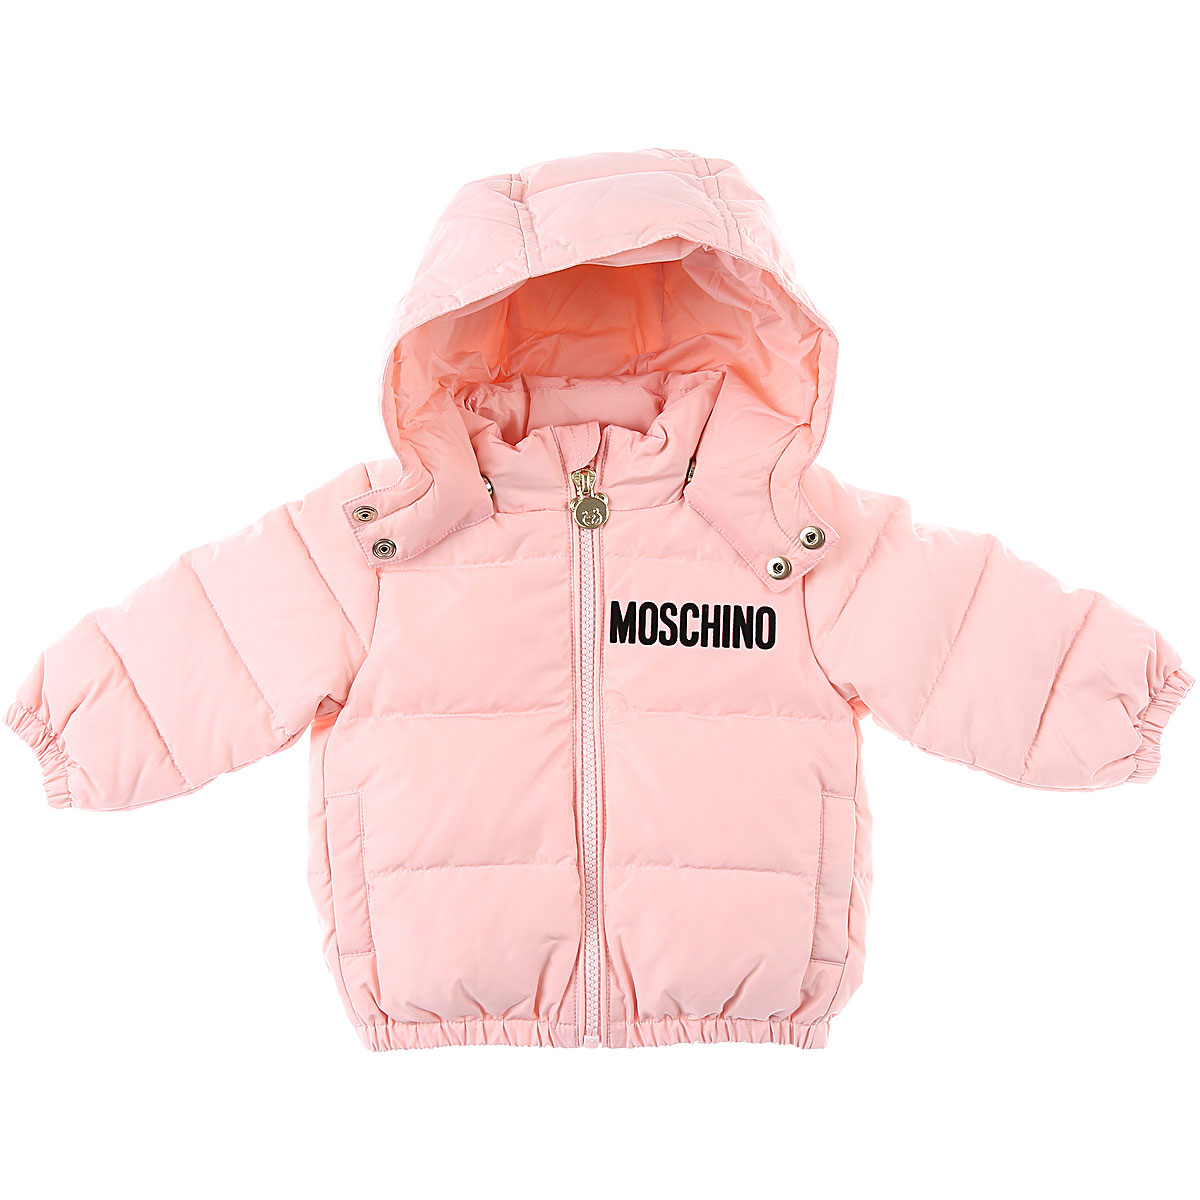 Moschino Baby Daunen Jacke für Mädchen Günstig im Sale, Pink, Polyester, 2017, 12M 18M 24M 2Y 3Y 6M 9M